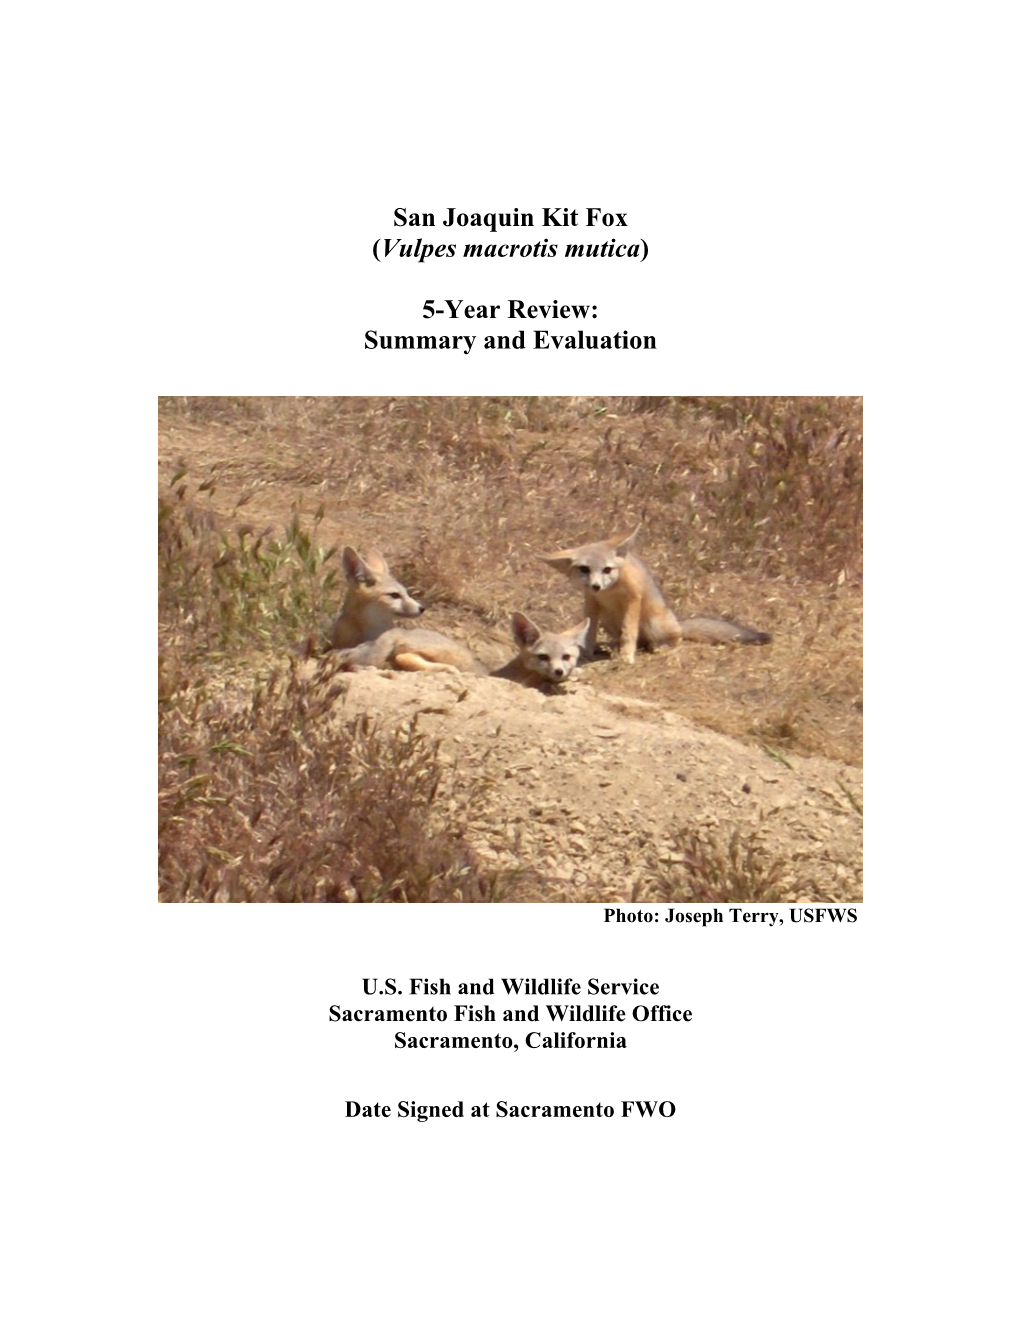 San Joaquin Kit Fox (Vulpes Macrotis Mutica) 5-Year Review